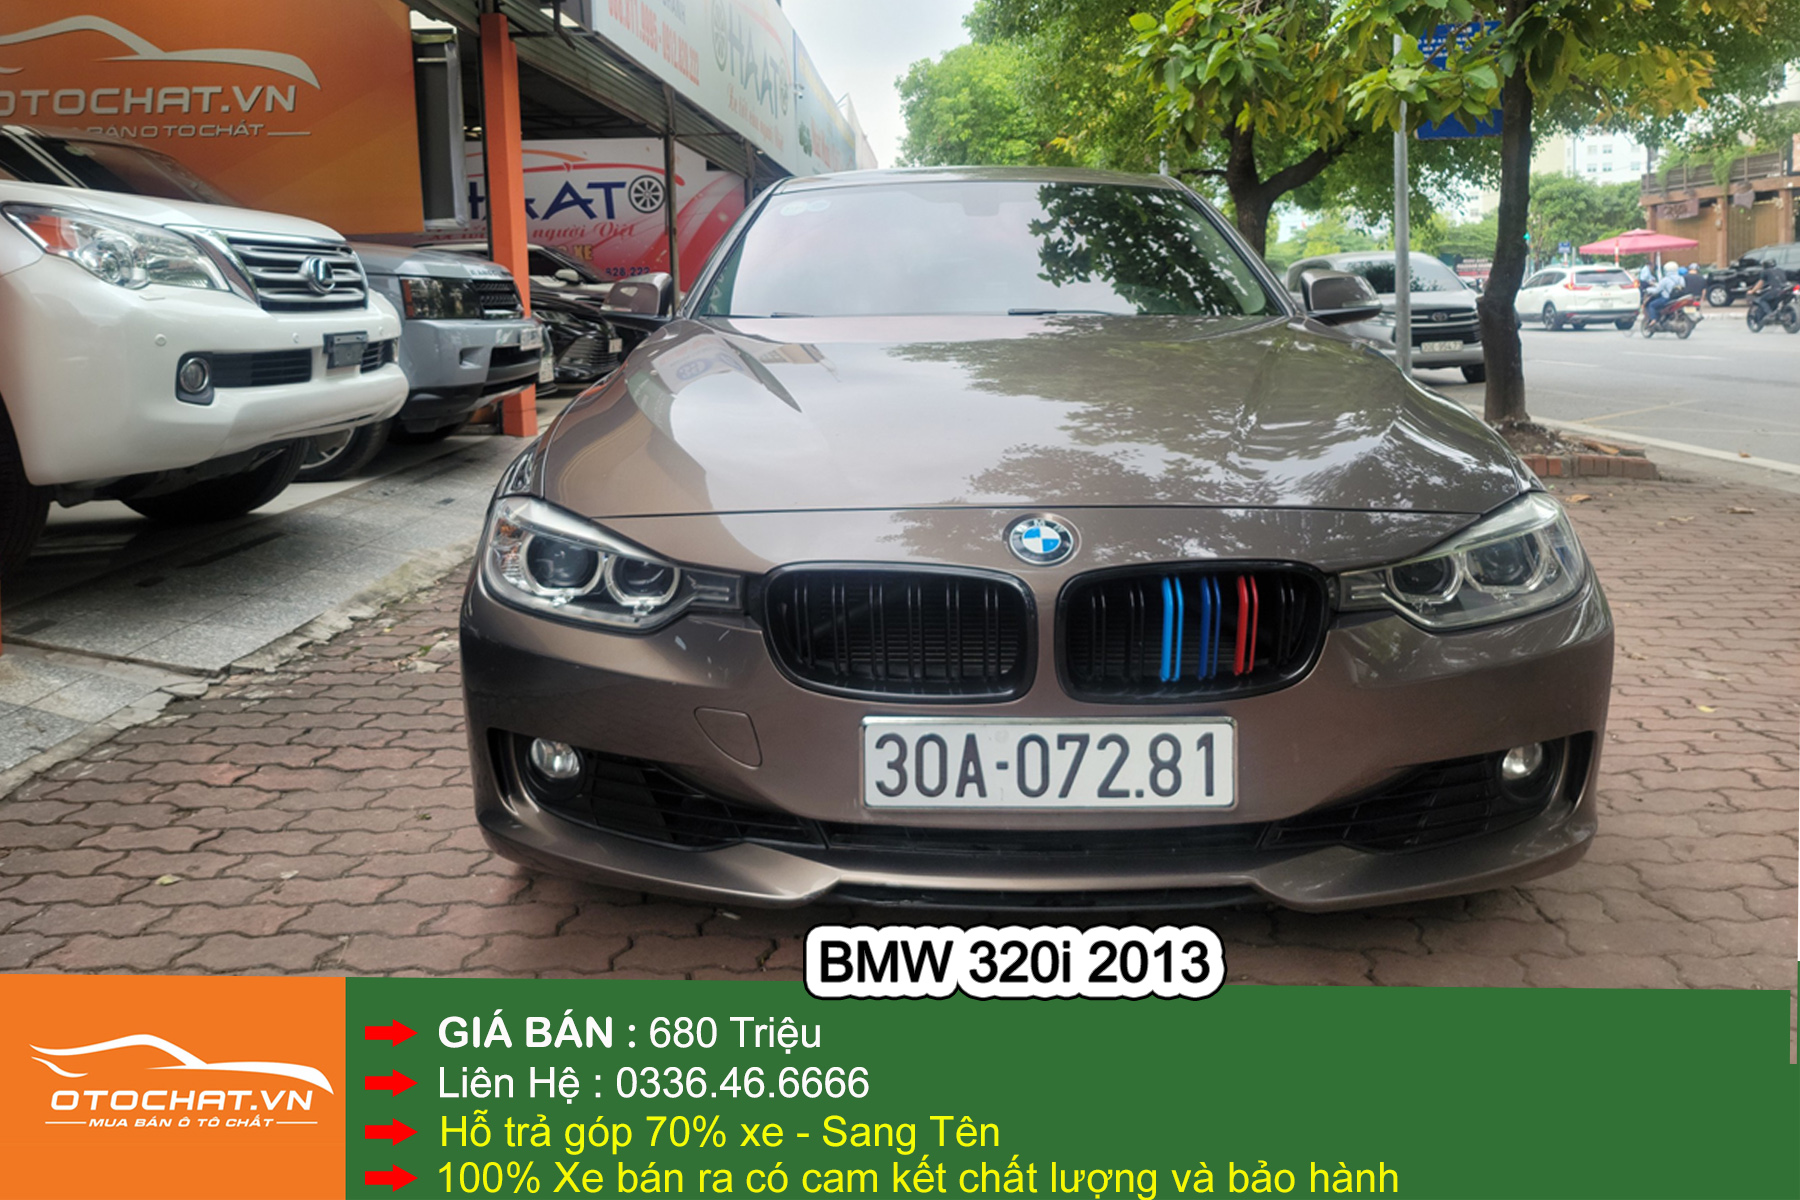 BMW 320i 2013 